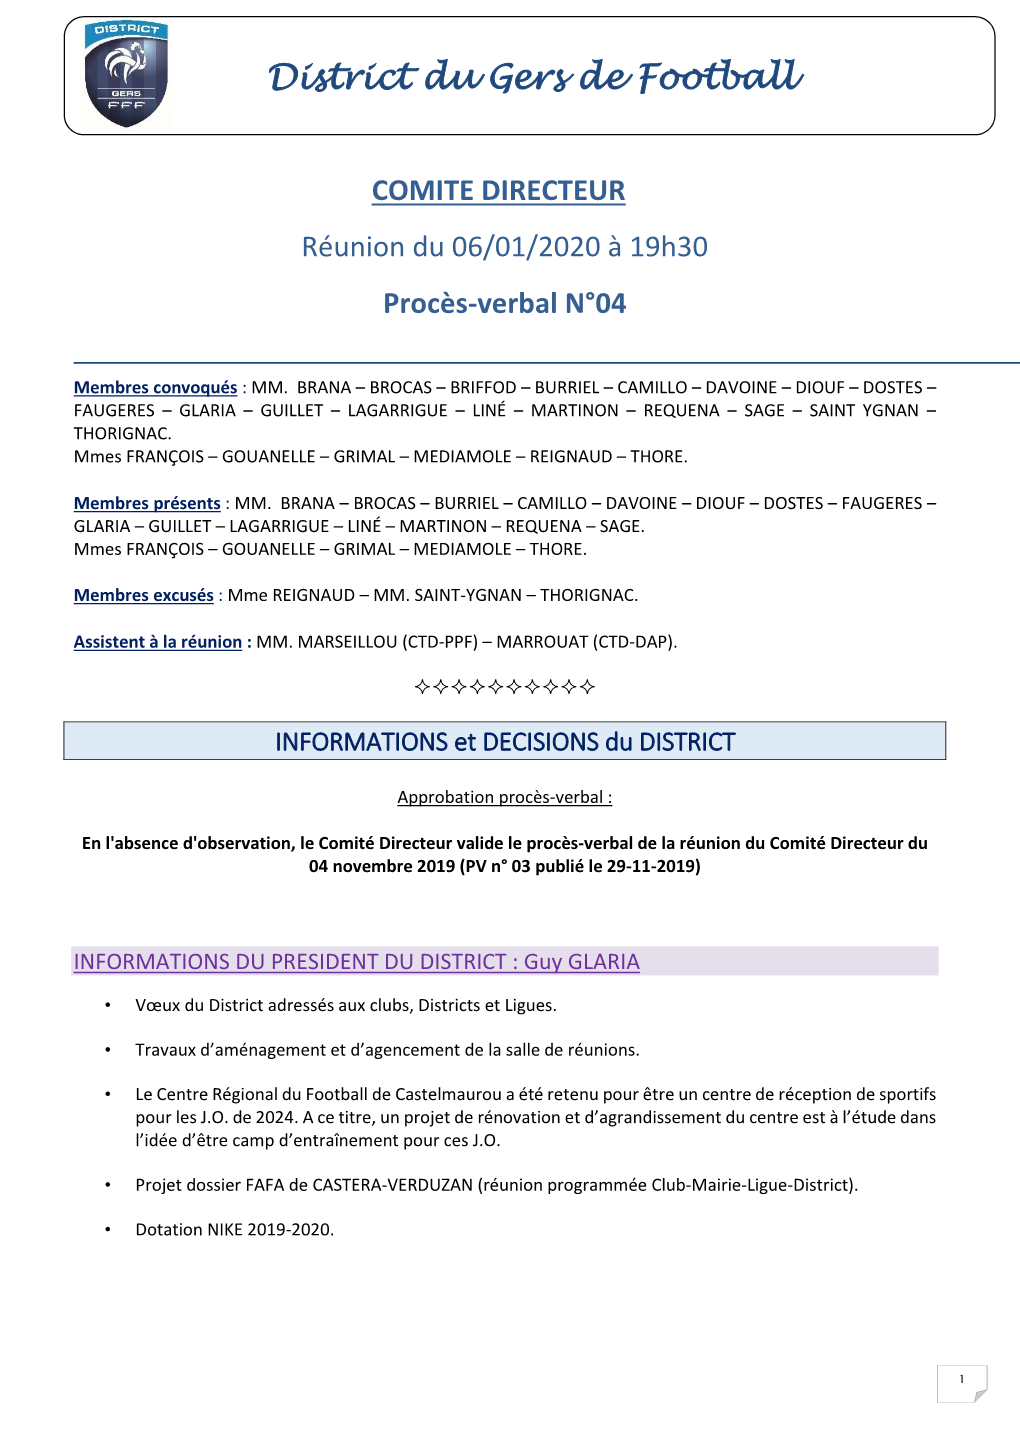 COMITE DIRECTEUR Réunion Du 06/01/2020 À 19H30 Procès-Verbal N°04